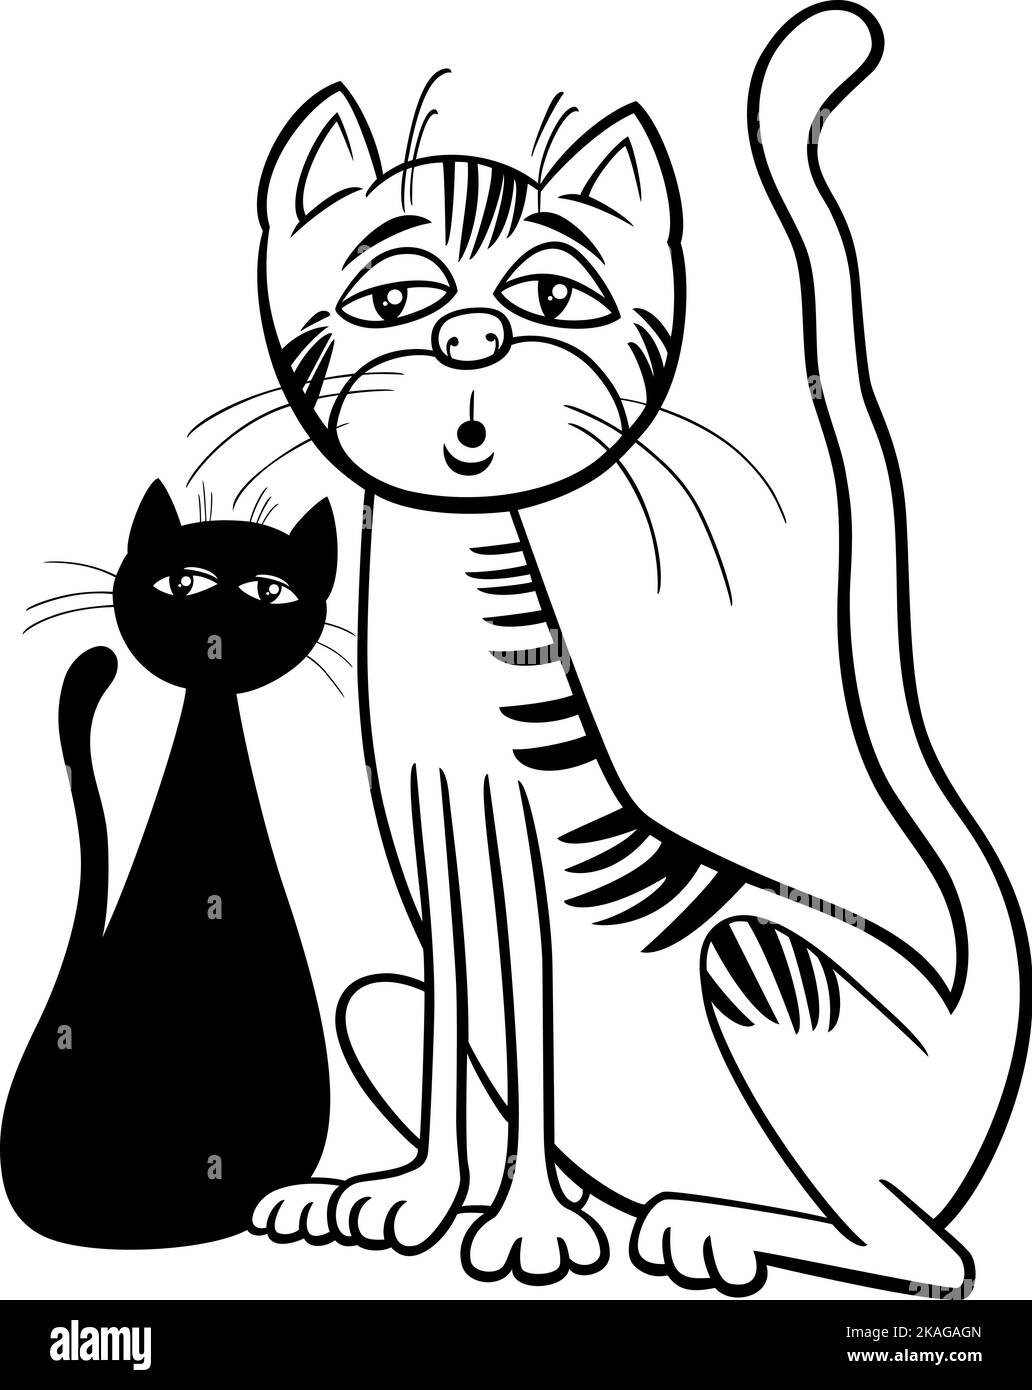 Dessin animé noir et blanc illustration de la page de coloriage de personnage de bande dessinée de chat surpris ou endormi Illustration de Vecteur